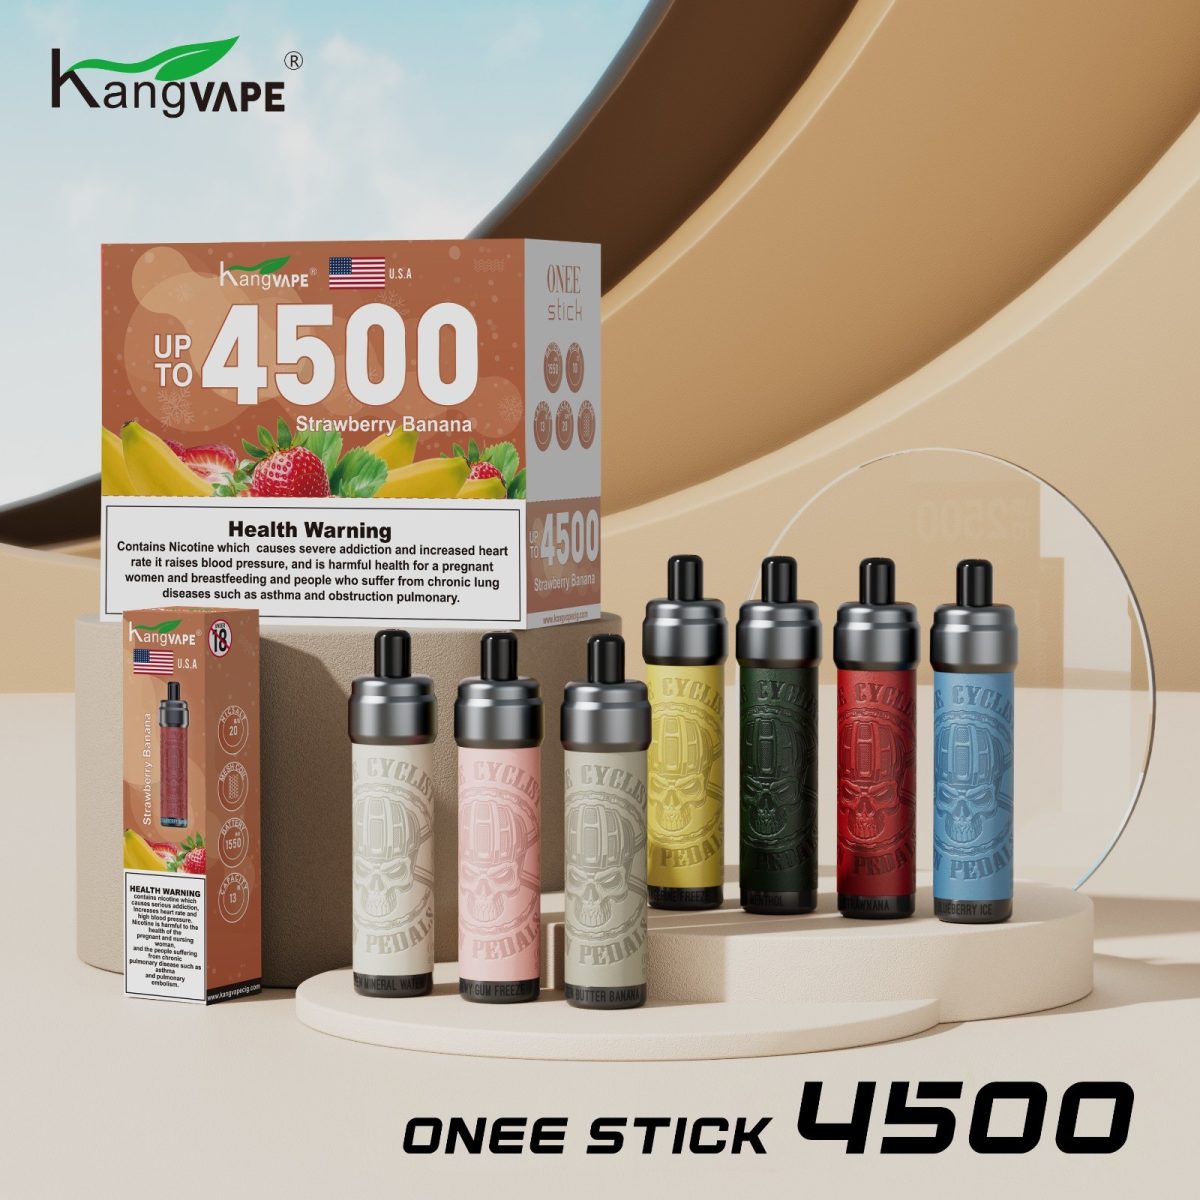 Kang Vape Onee Stick 4500 Puffs In UAE